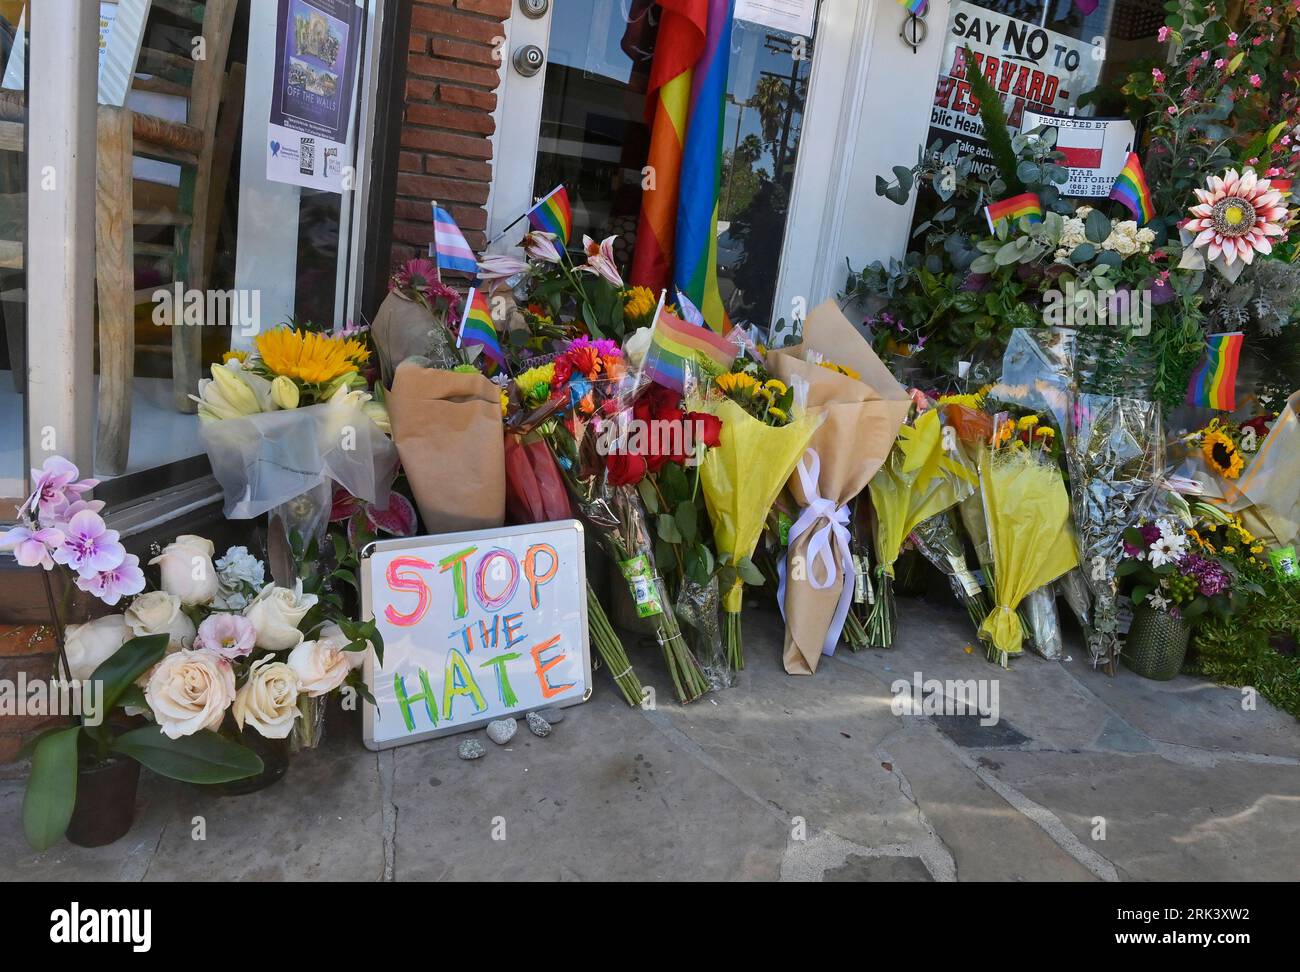 Eine provisorische Gedenkstätte für Laura Ann Carleton wird am Mittwoch, den 23. August 2023, vor ihrem Geschäft in Studio City, Kalifornien, gesehen. Carleton, eine verheiratete Mutter von 9 Kindern, wurde am vergangenen Freitag von Travis Ikeguchi erschossen, nachdem er in einem hitzigen Streit um eine Regenbogenfahne von ihrem mag.Pi-Laden in Cedar Glen, Kalifornien, homophobe Bemerkungen gemacht hatte. In einem Bericht wurden mehr als 350 Anti-LGBTQ-Vorfälle in 46 bundesstaaten und im District of Columbia festgestellt, da landesweit mehr Anti-LGBTQ-Gesetze verabschiedet werden. Foto von Jim Ruymen/UPI. Stockfoto